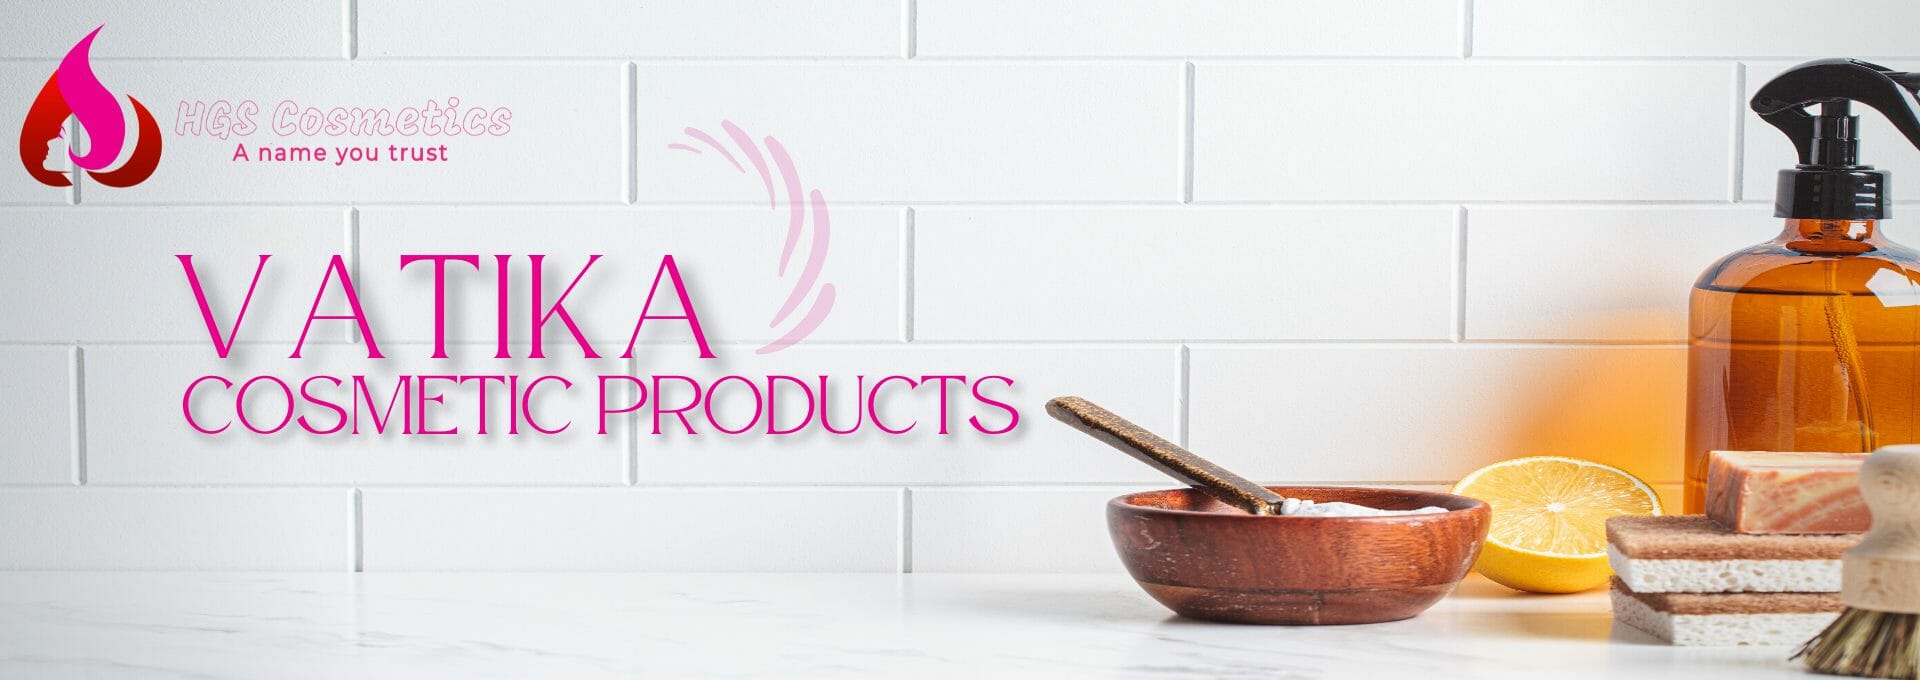 Buy Original Vatika Products Online in Pakistan @ HGS Cosmetics